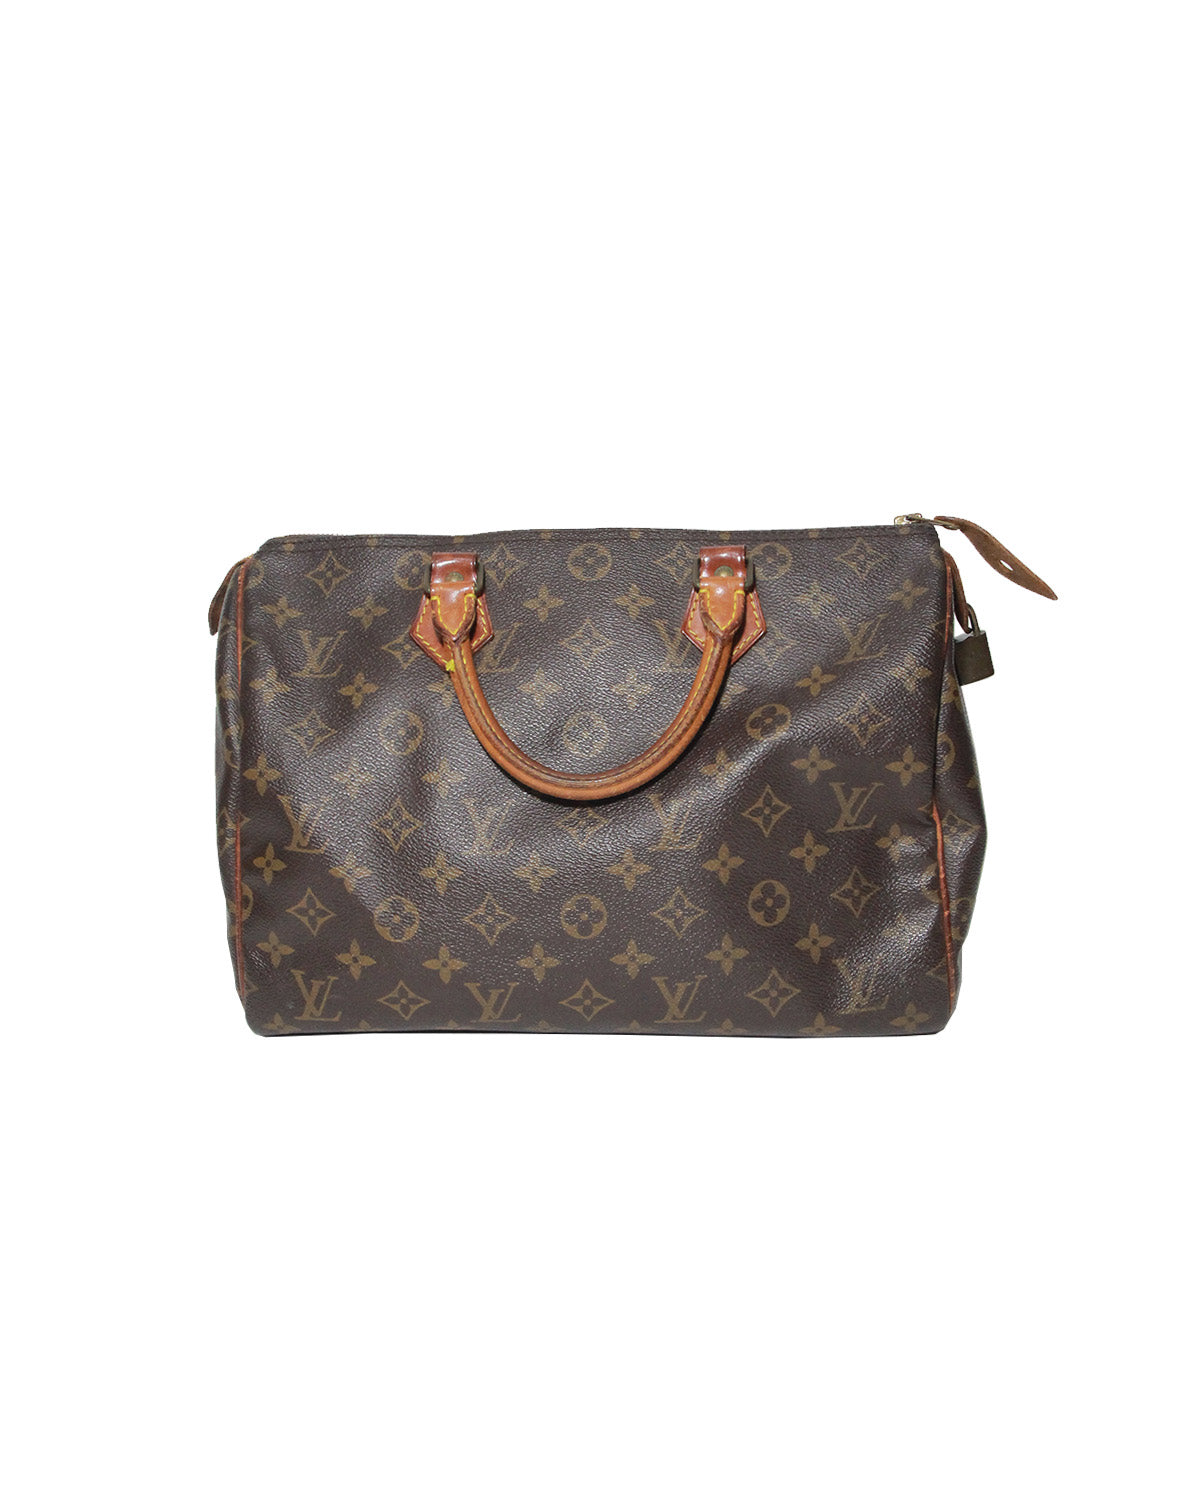 Louis Vuitton Monogram Speedy 30 Handbag- Vintage